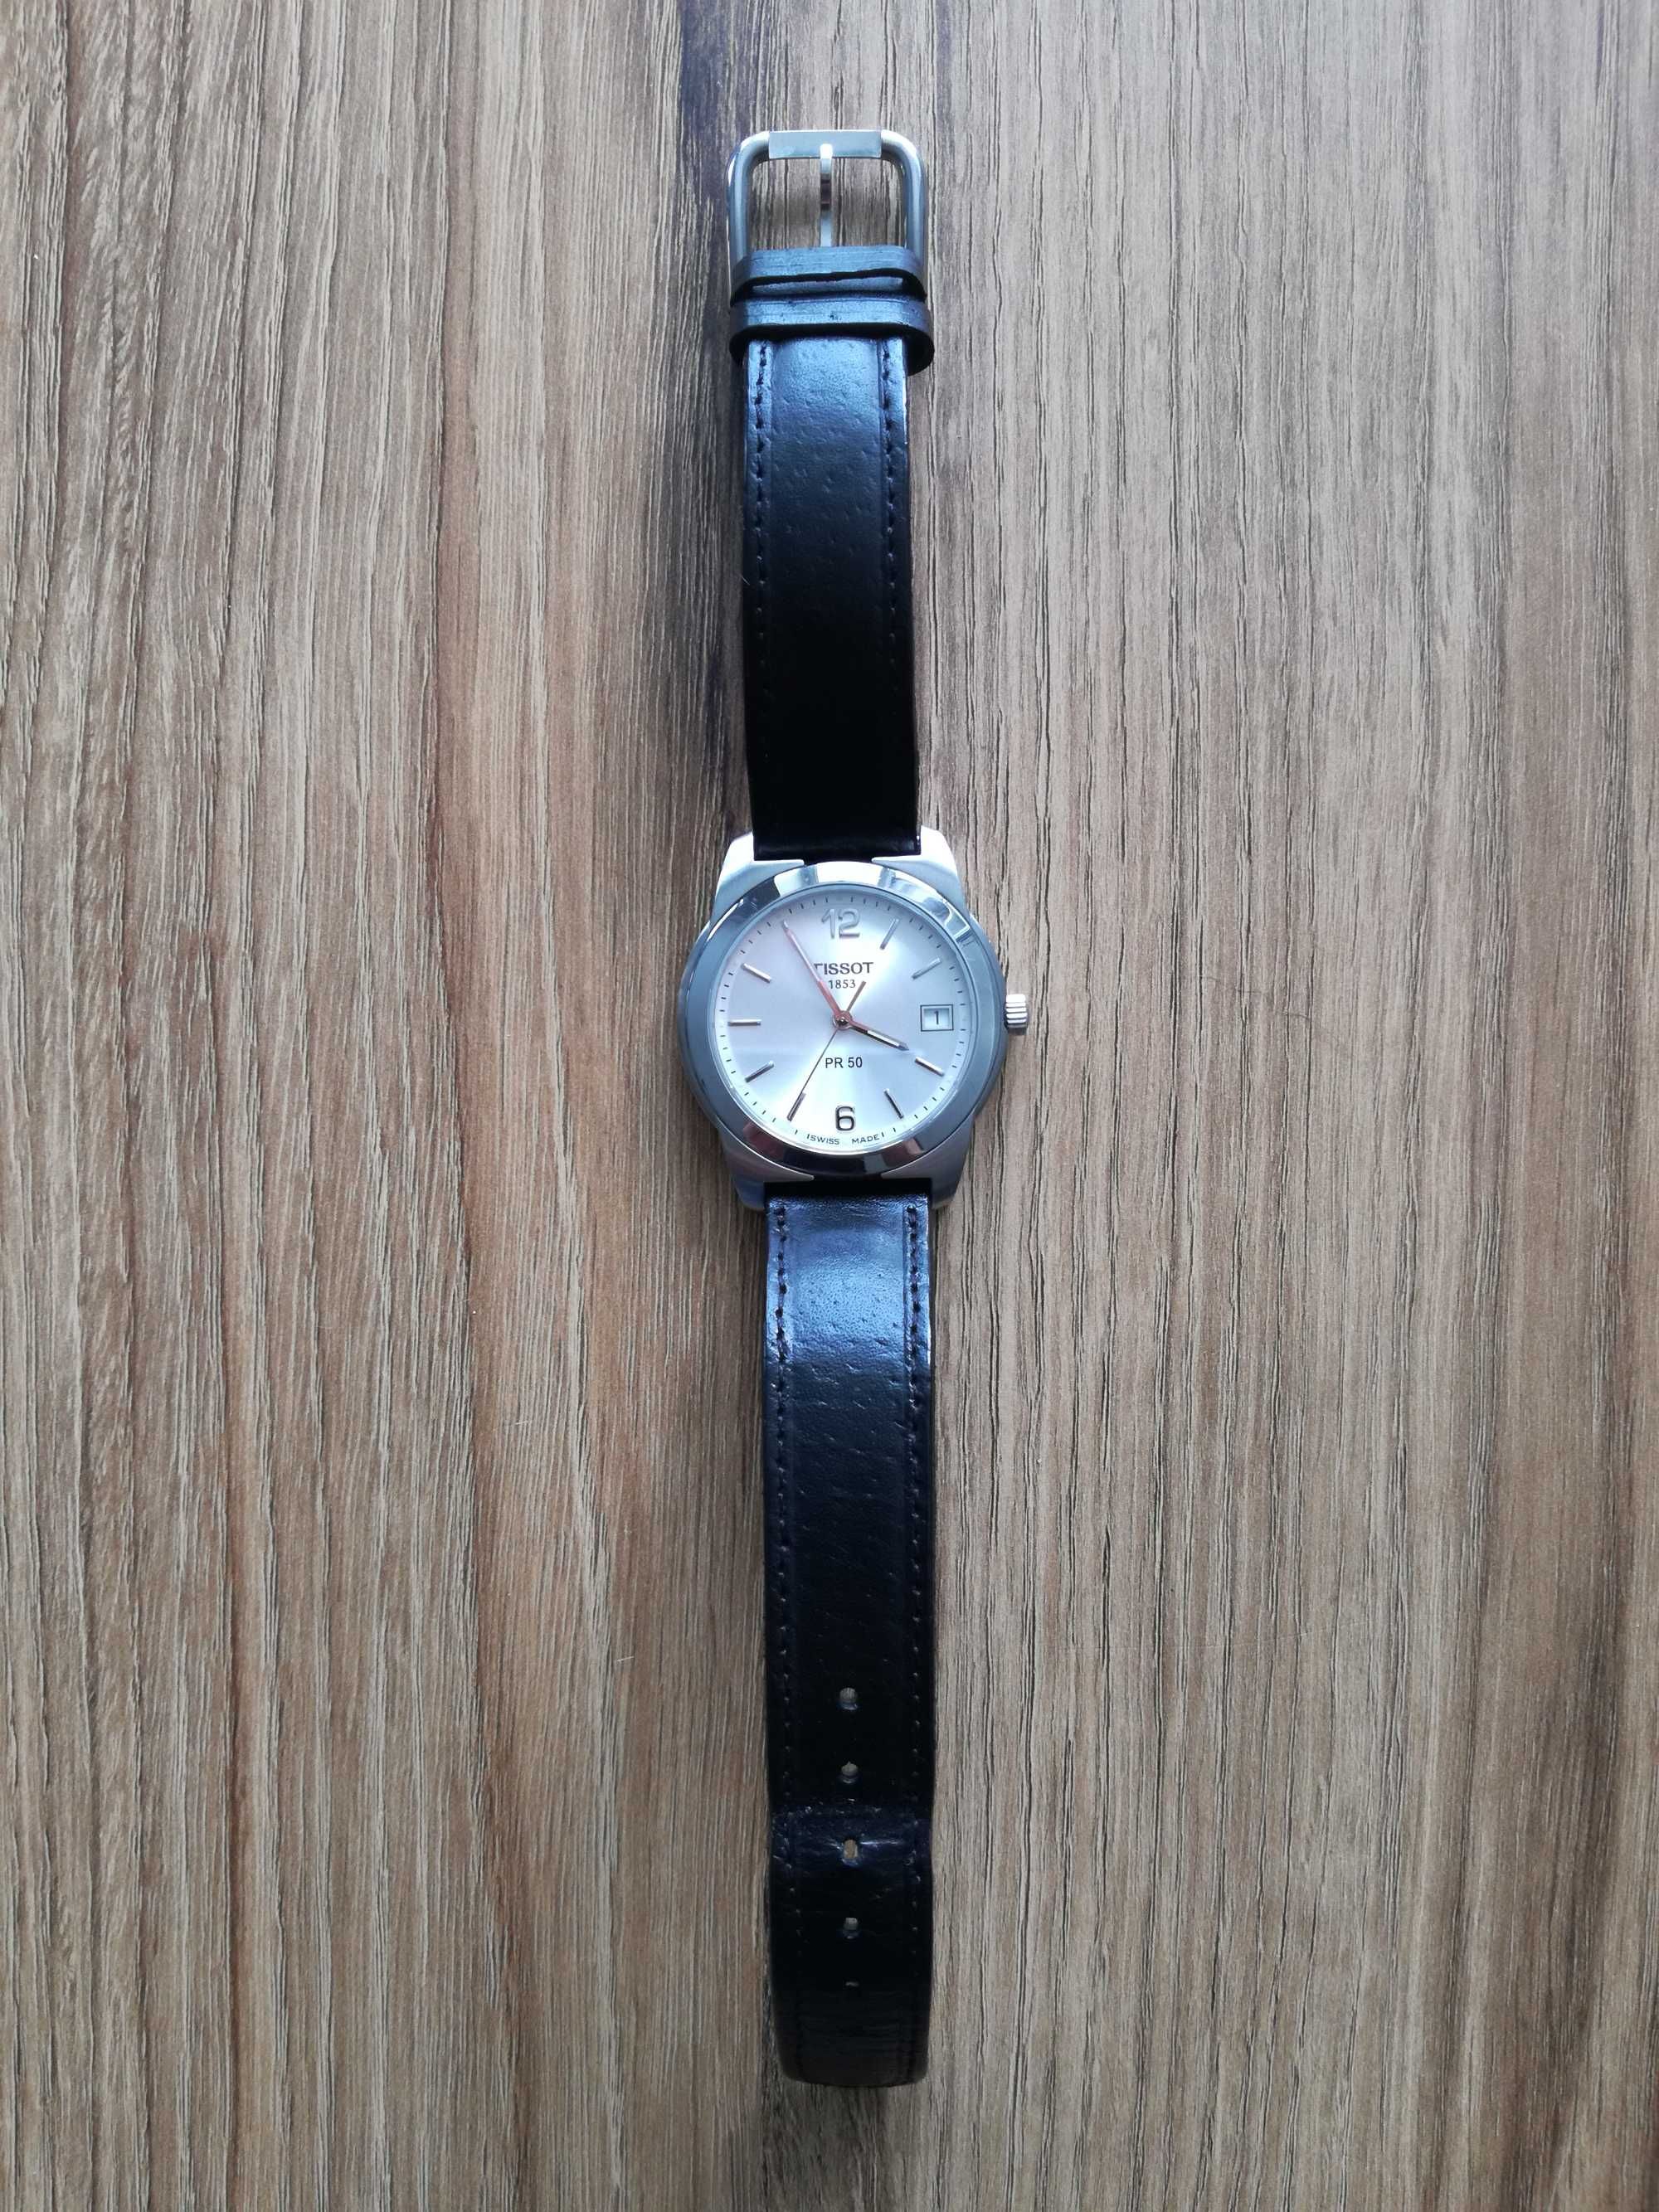 Tissot PR50 zegarek kwarcowy używany